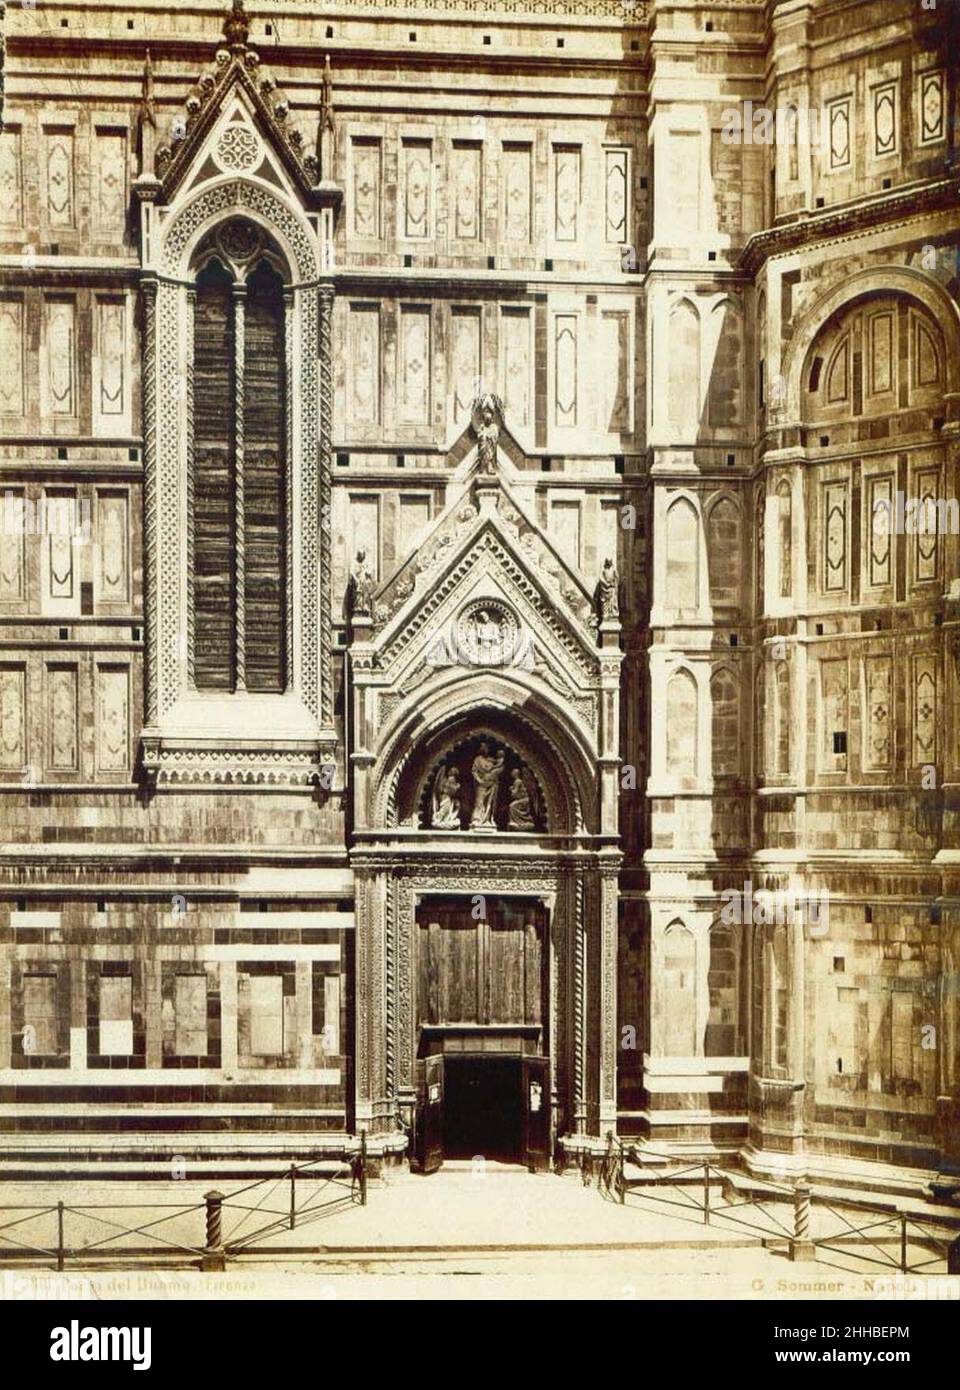 Sommer, Giorgio (1834-1914) - n. 3801 - Porta del Duomo - Firenze. Stock Photo